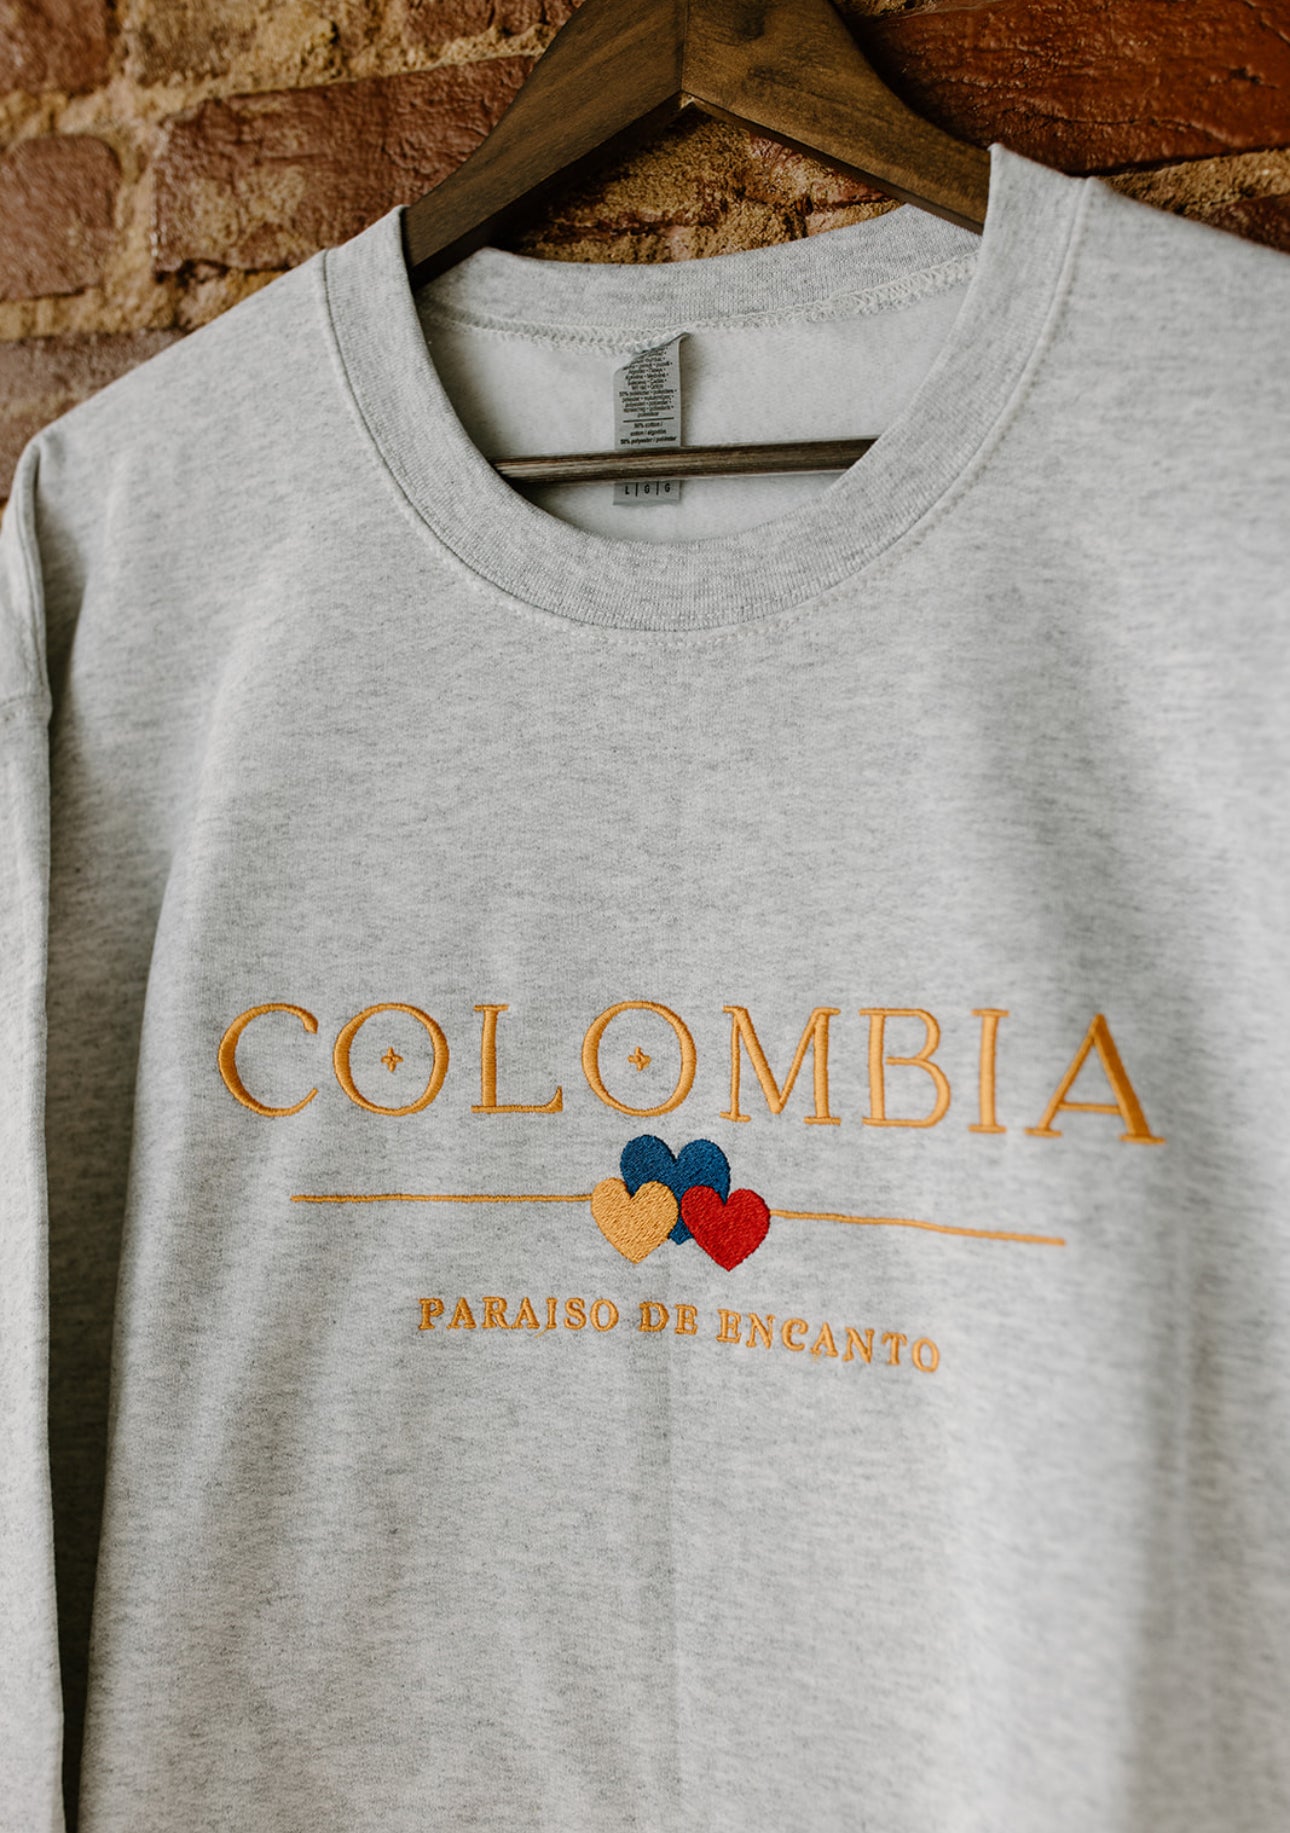 Colombia paraíso de encanto